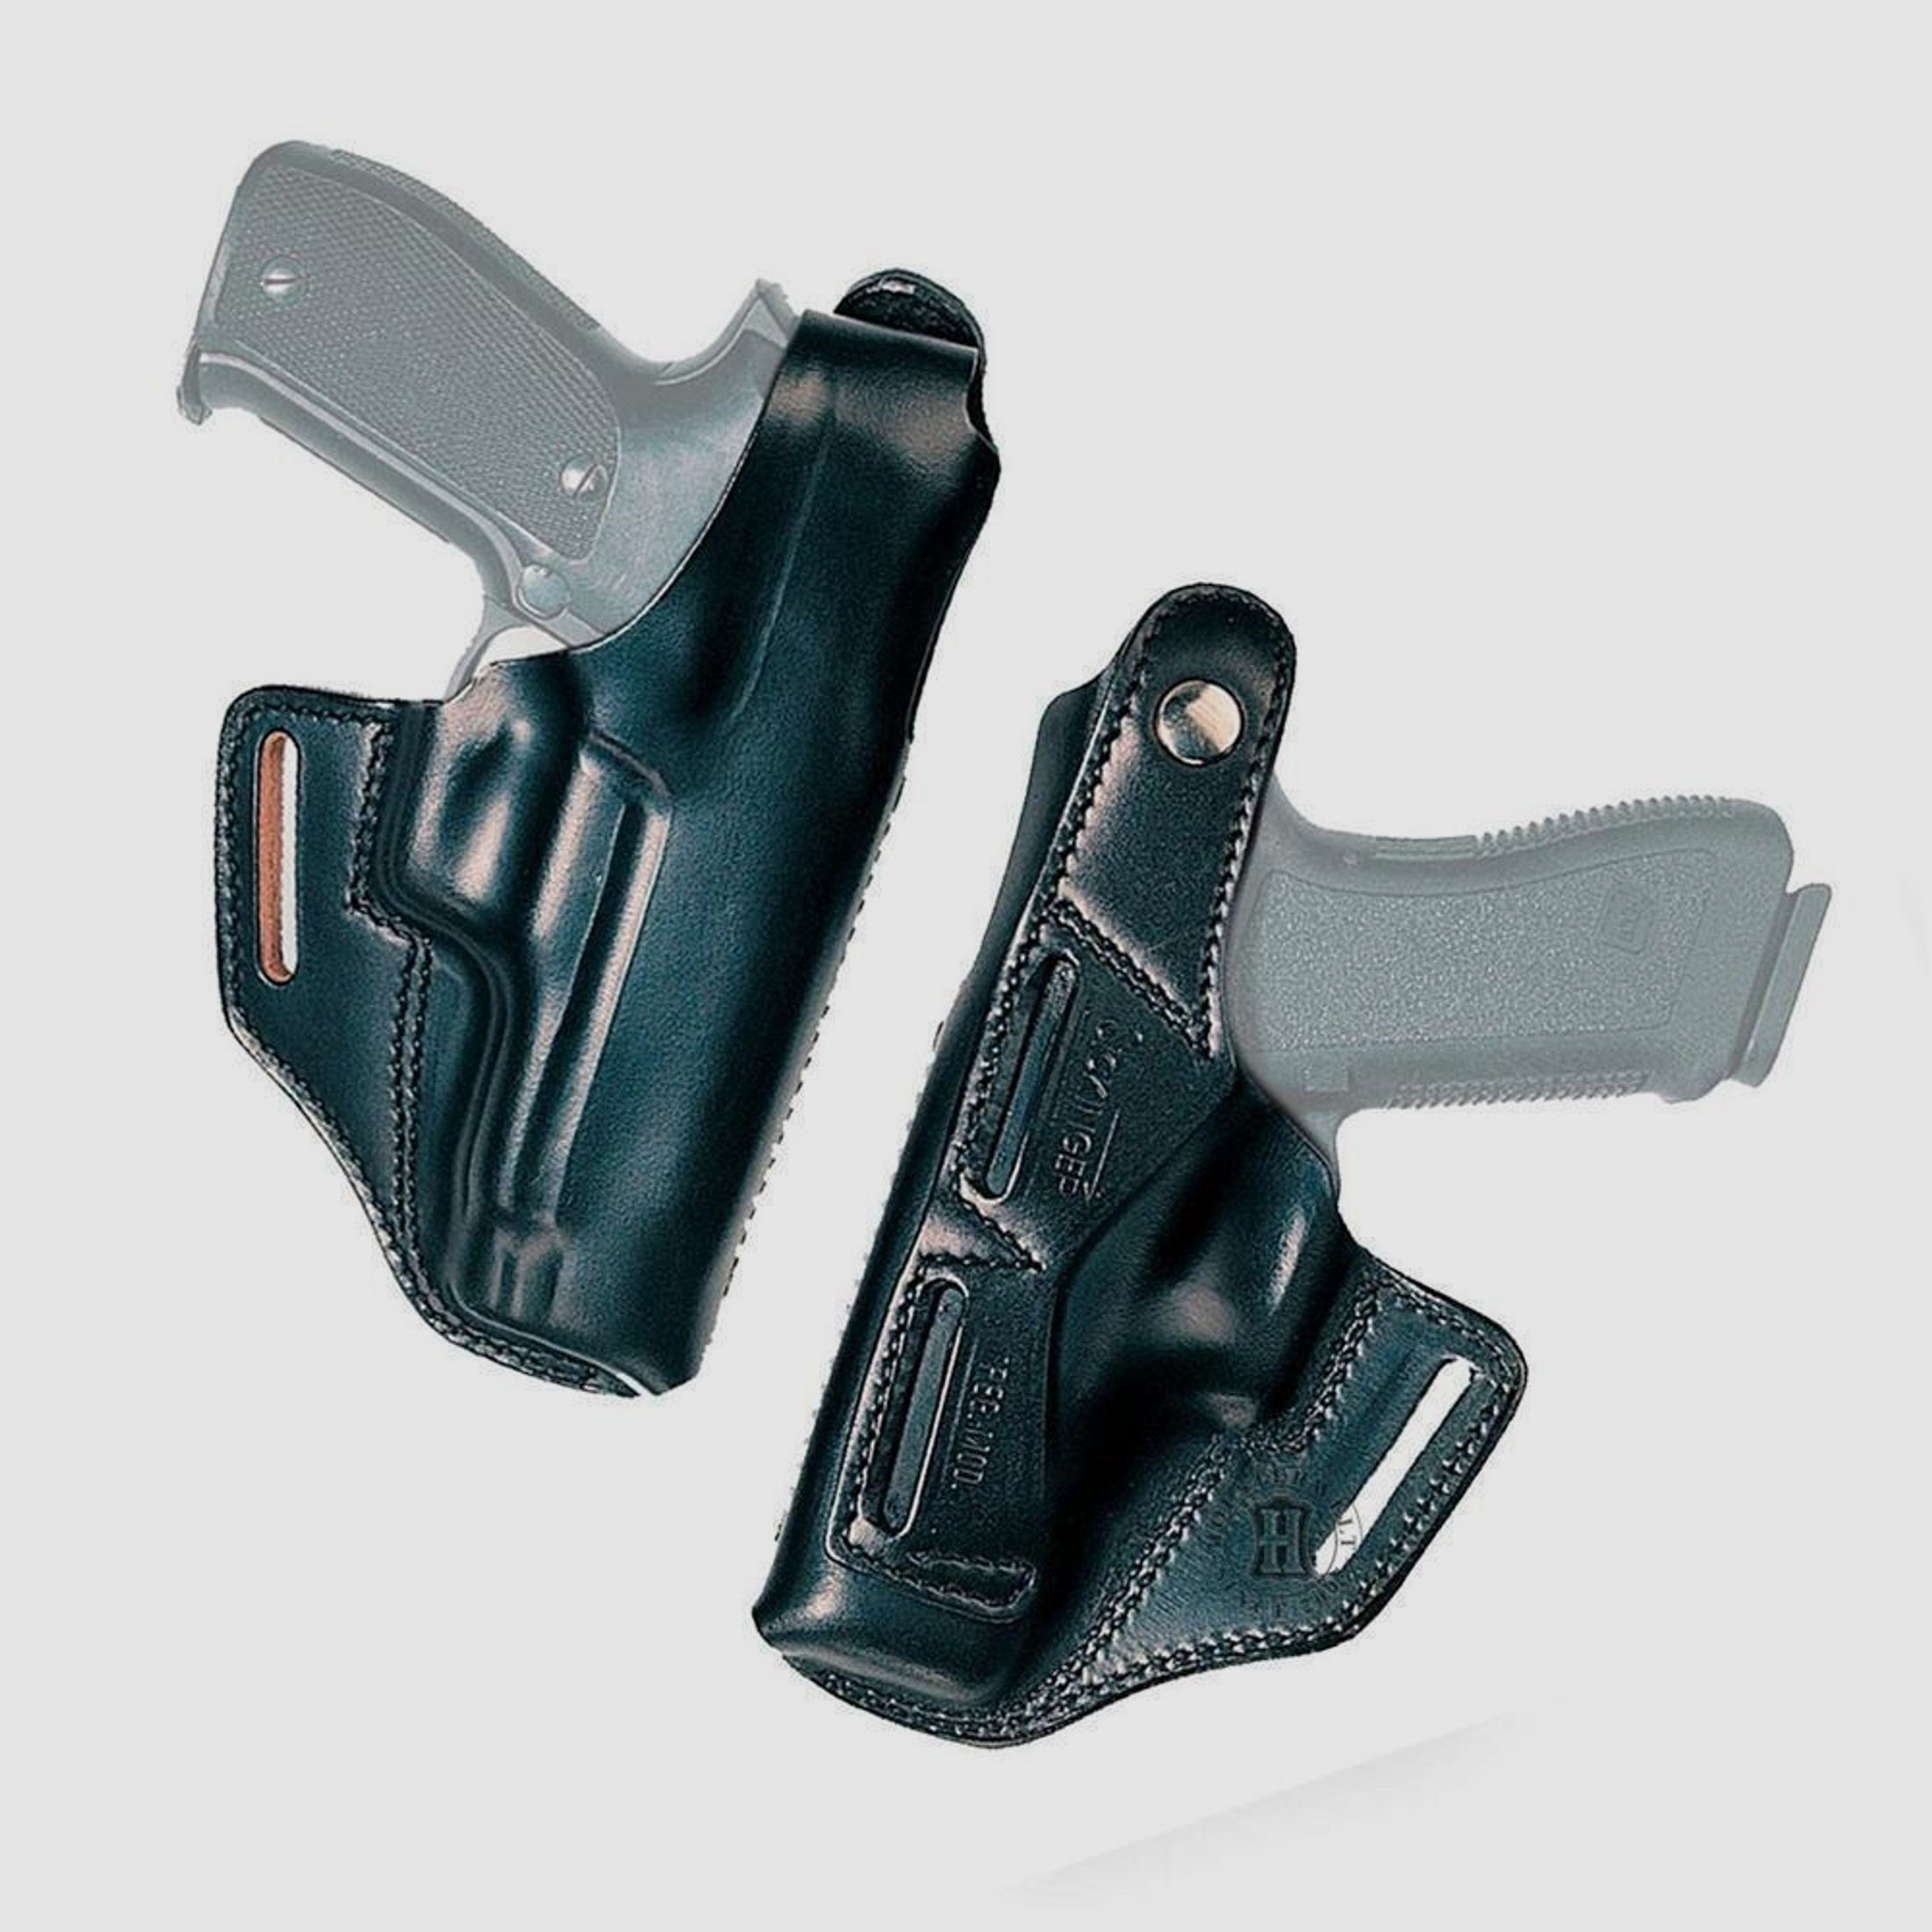 Gürtelholster BELT MASTER Glock 29/30-Linkshänder-Braun